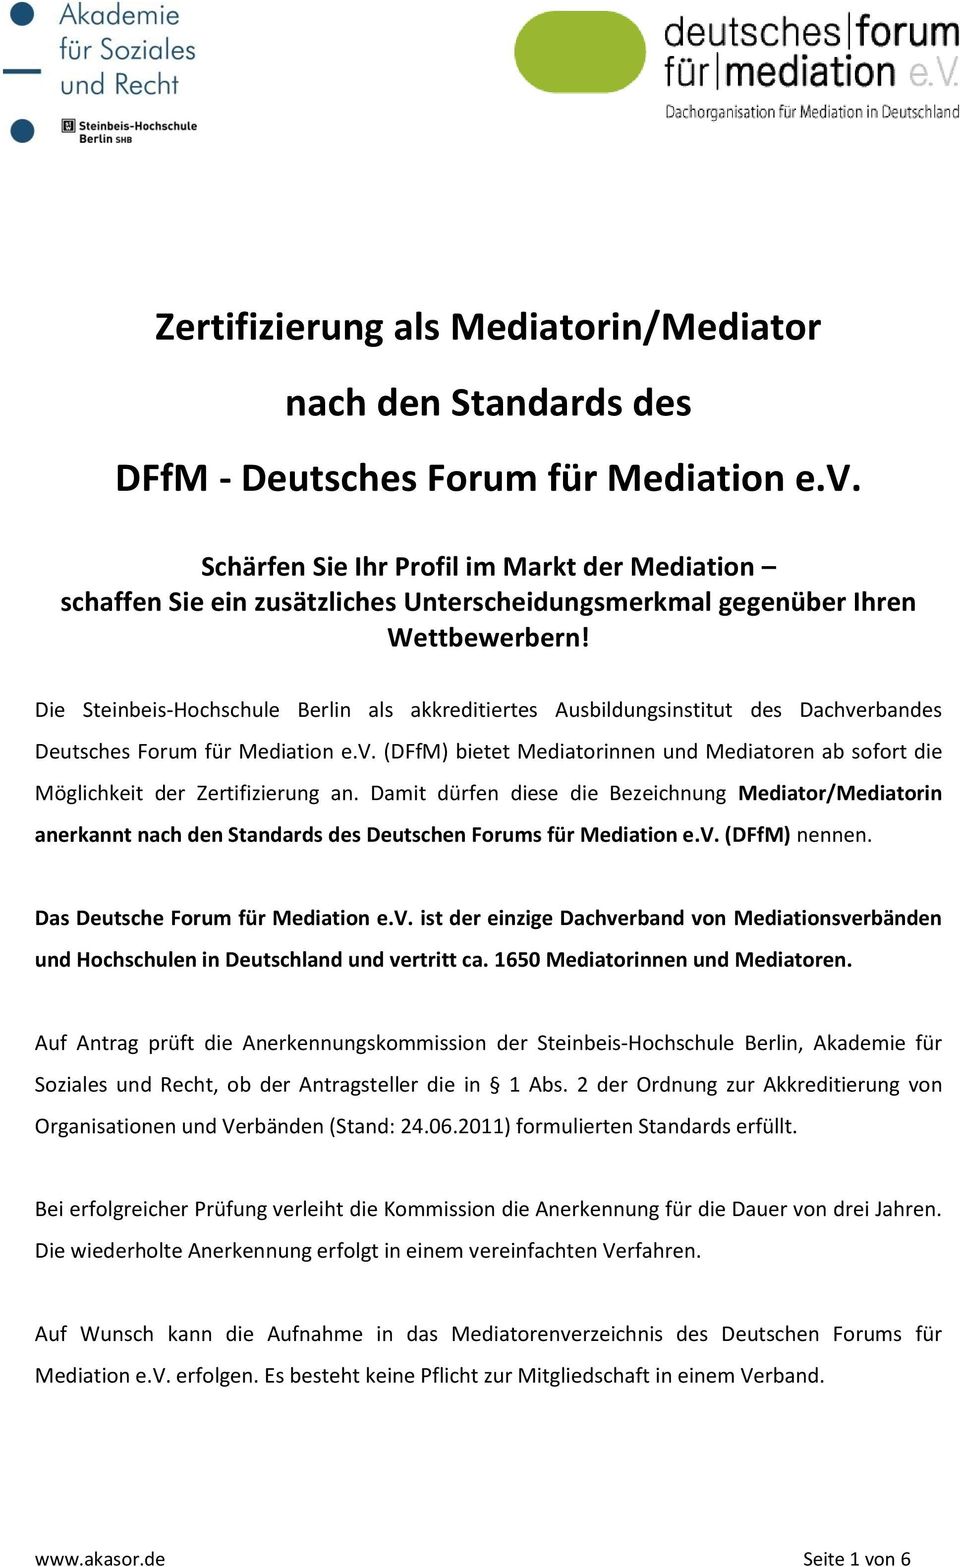 Die Steinbeis-Hochschule Berlin als akkreditiertes Ausbildungsinstitut des Dachverbandes Deutsches Forum für Mediation e.v. (DFfM) bietet Mediatorinnen und Mediatoren ab sofort die Möglichkeit der Zertifizierung an.